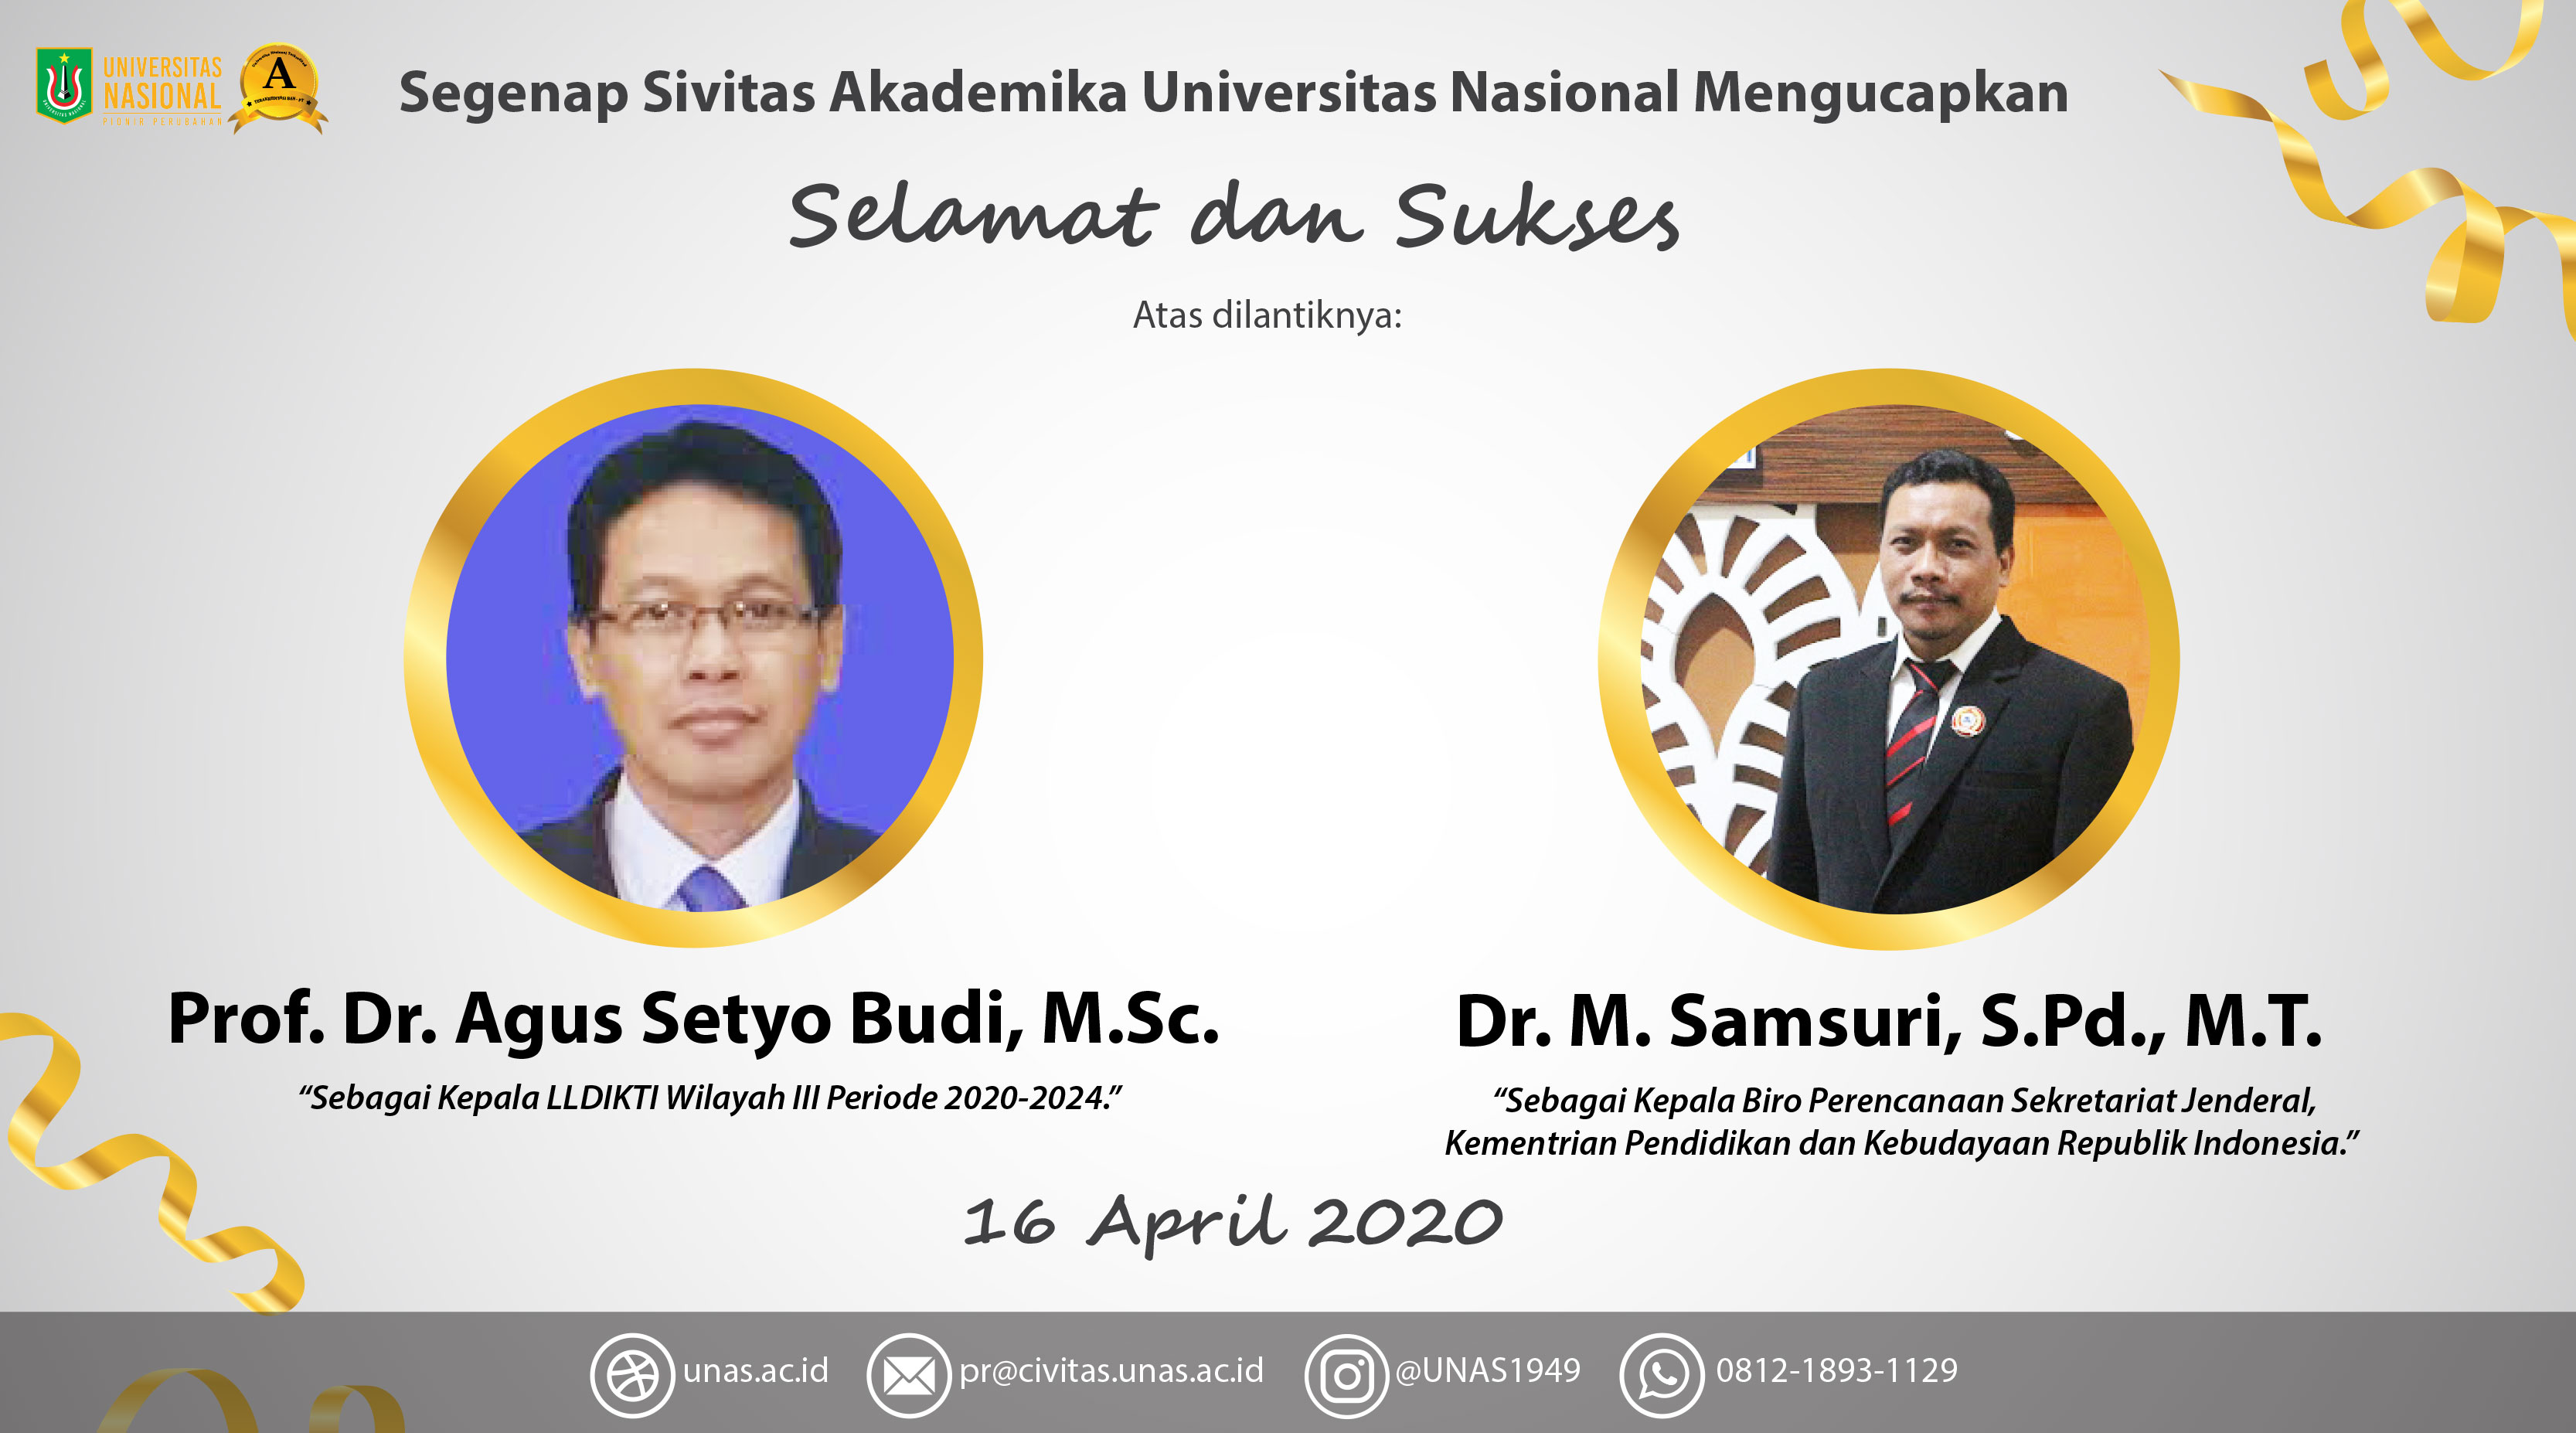 Selamat Dan Sukses untuk Prof. Dr. Agus Setyo Budi, M.Sc. dan Dr. M. Samsuri, S.Pd., M.T.